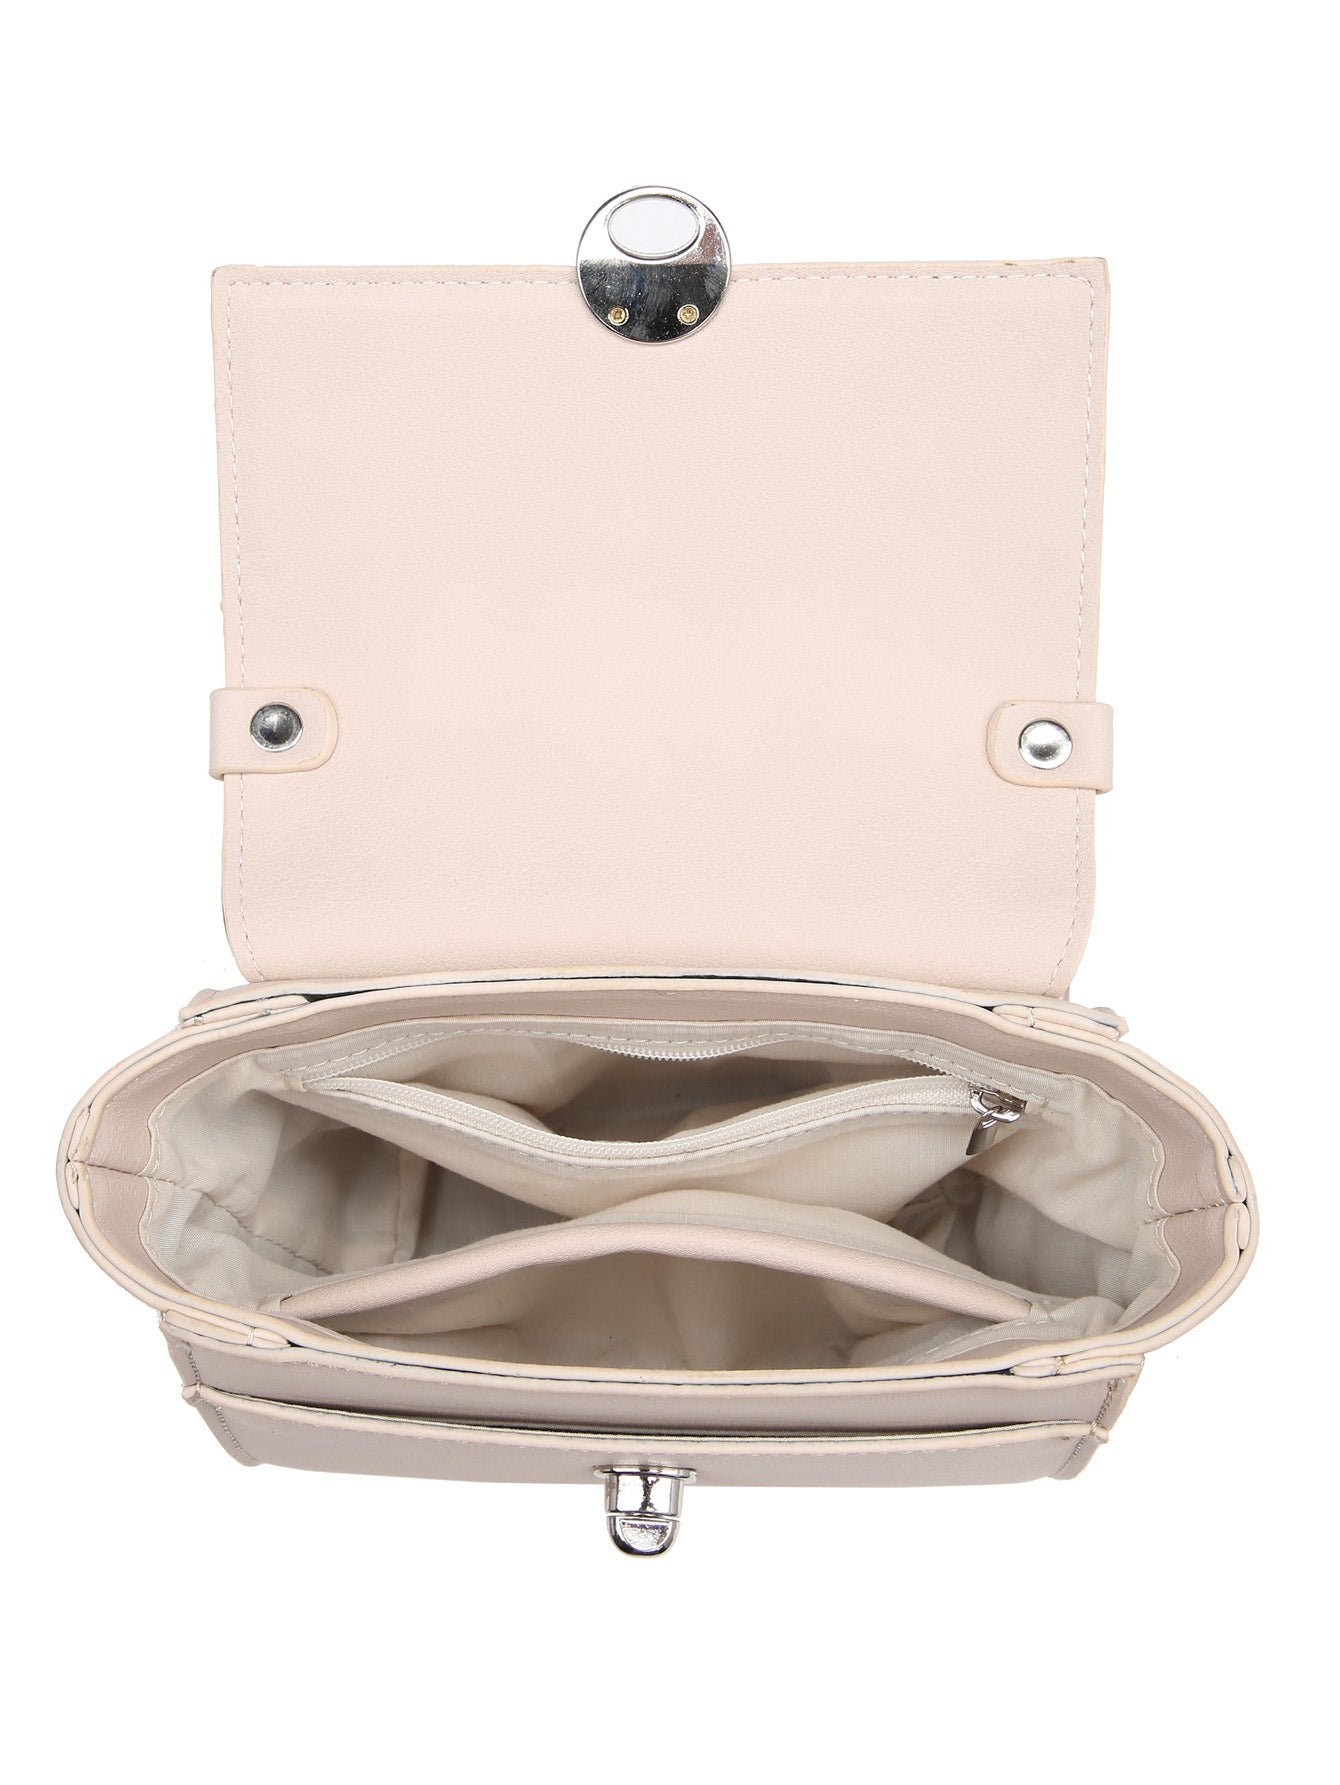 Mini tote purse crossbody MT2615-2 BE